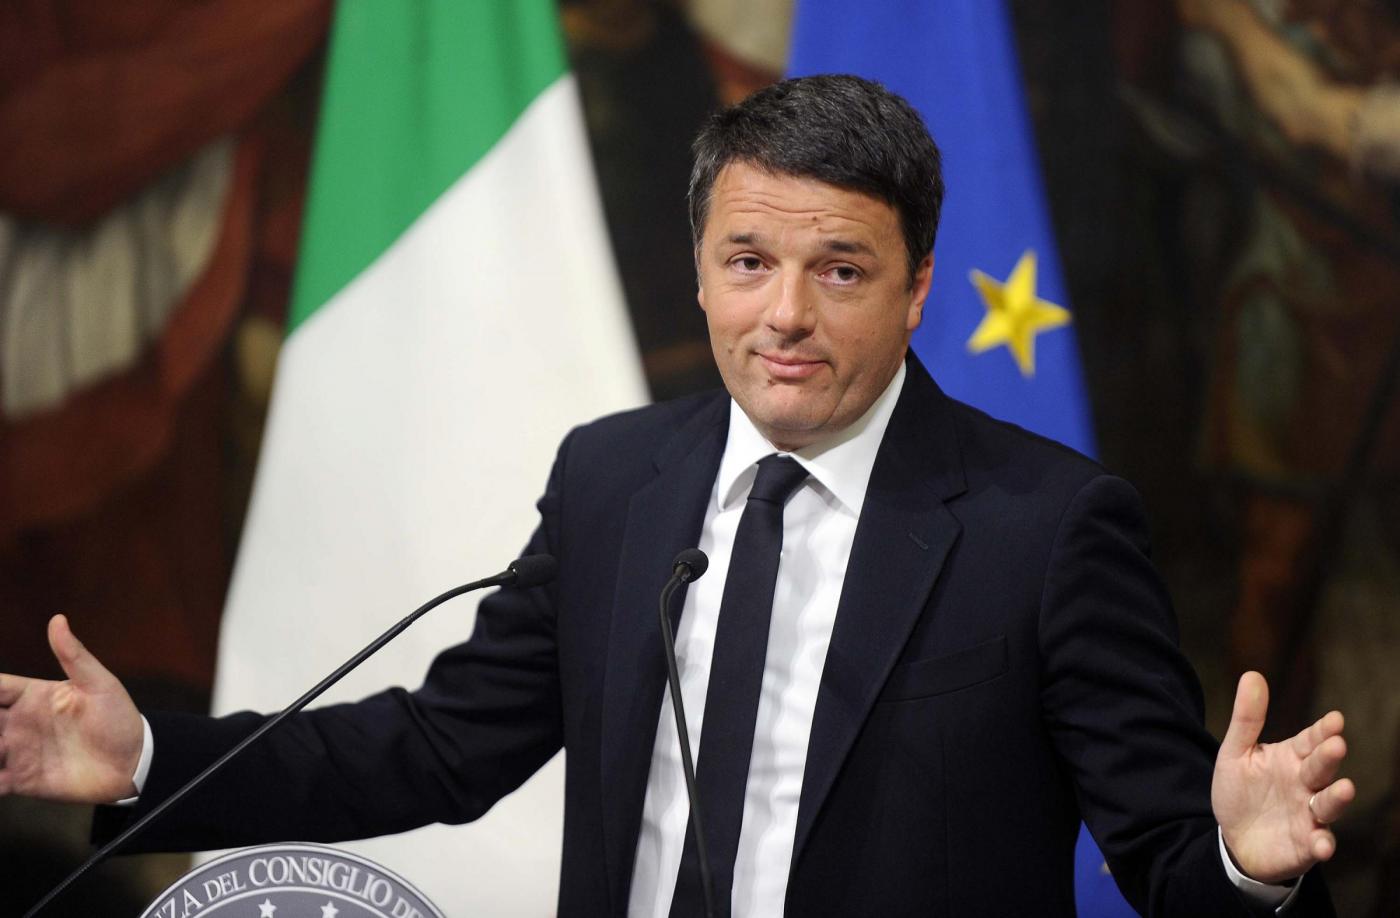 Palazzo Chigi Conferenza Matteo Renzi dopo i risultati del referendum costituzionale